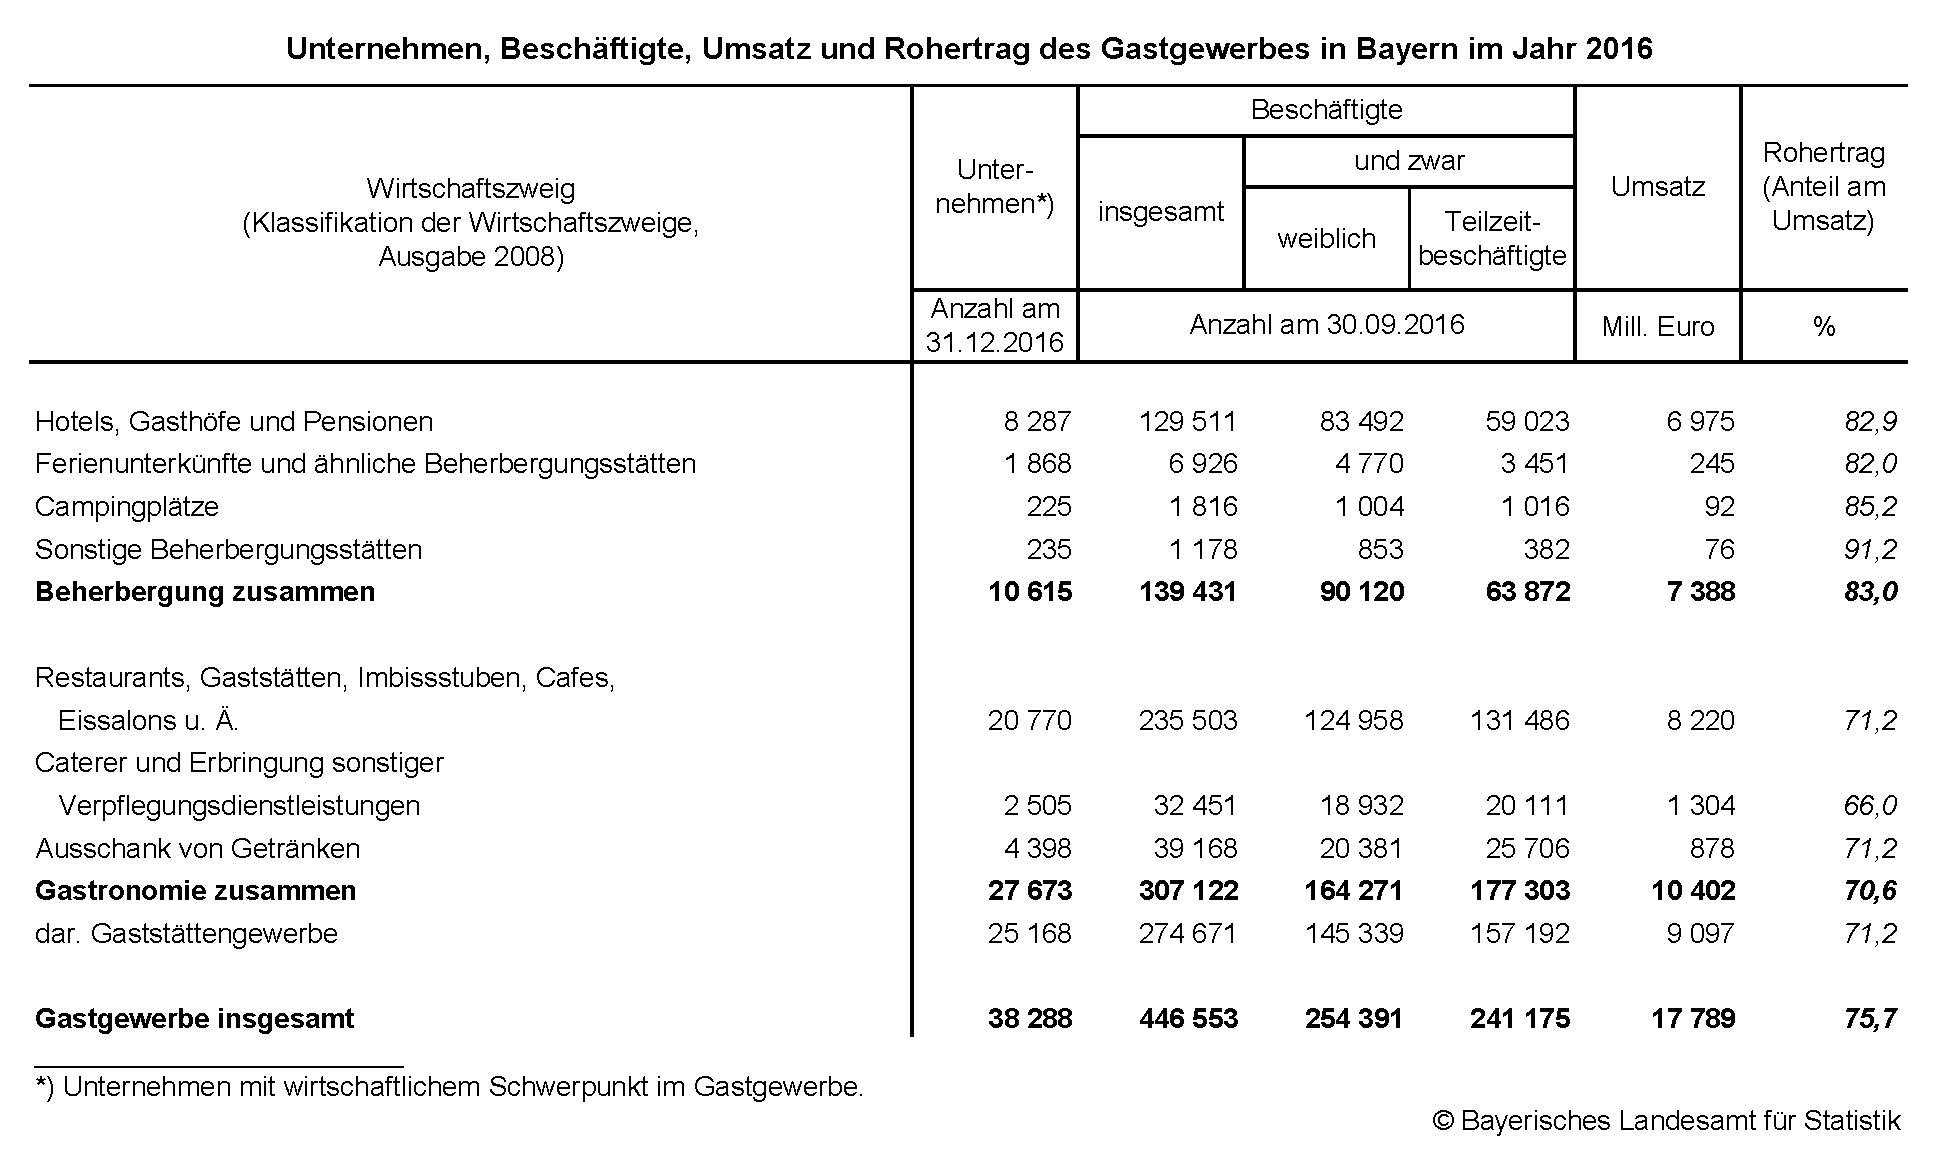 Unternehmen, Beschäftigte, Umsatz und Rohertrag des Gastgewerbes in Bayern im Jahr 2016